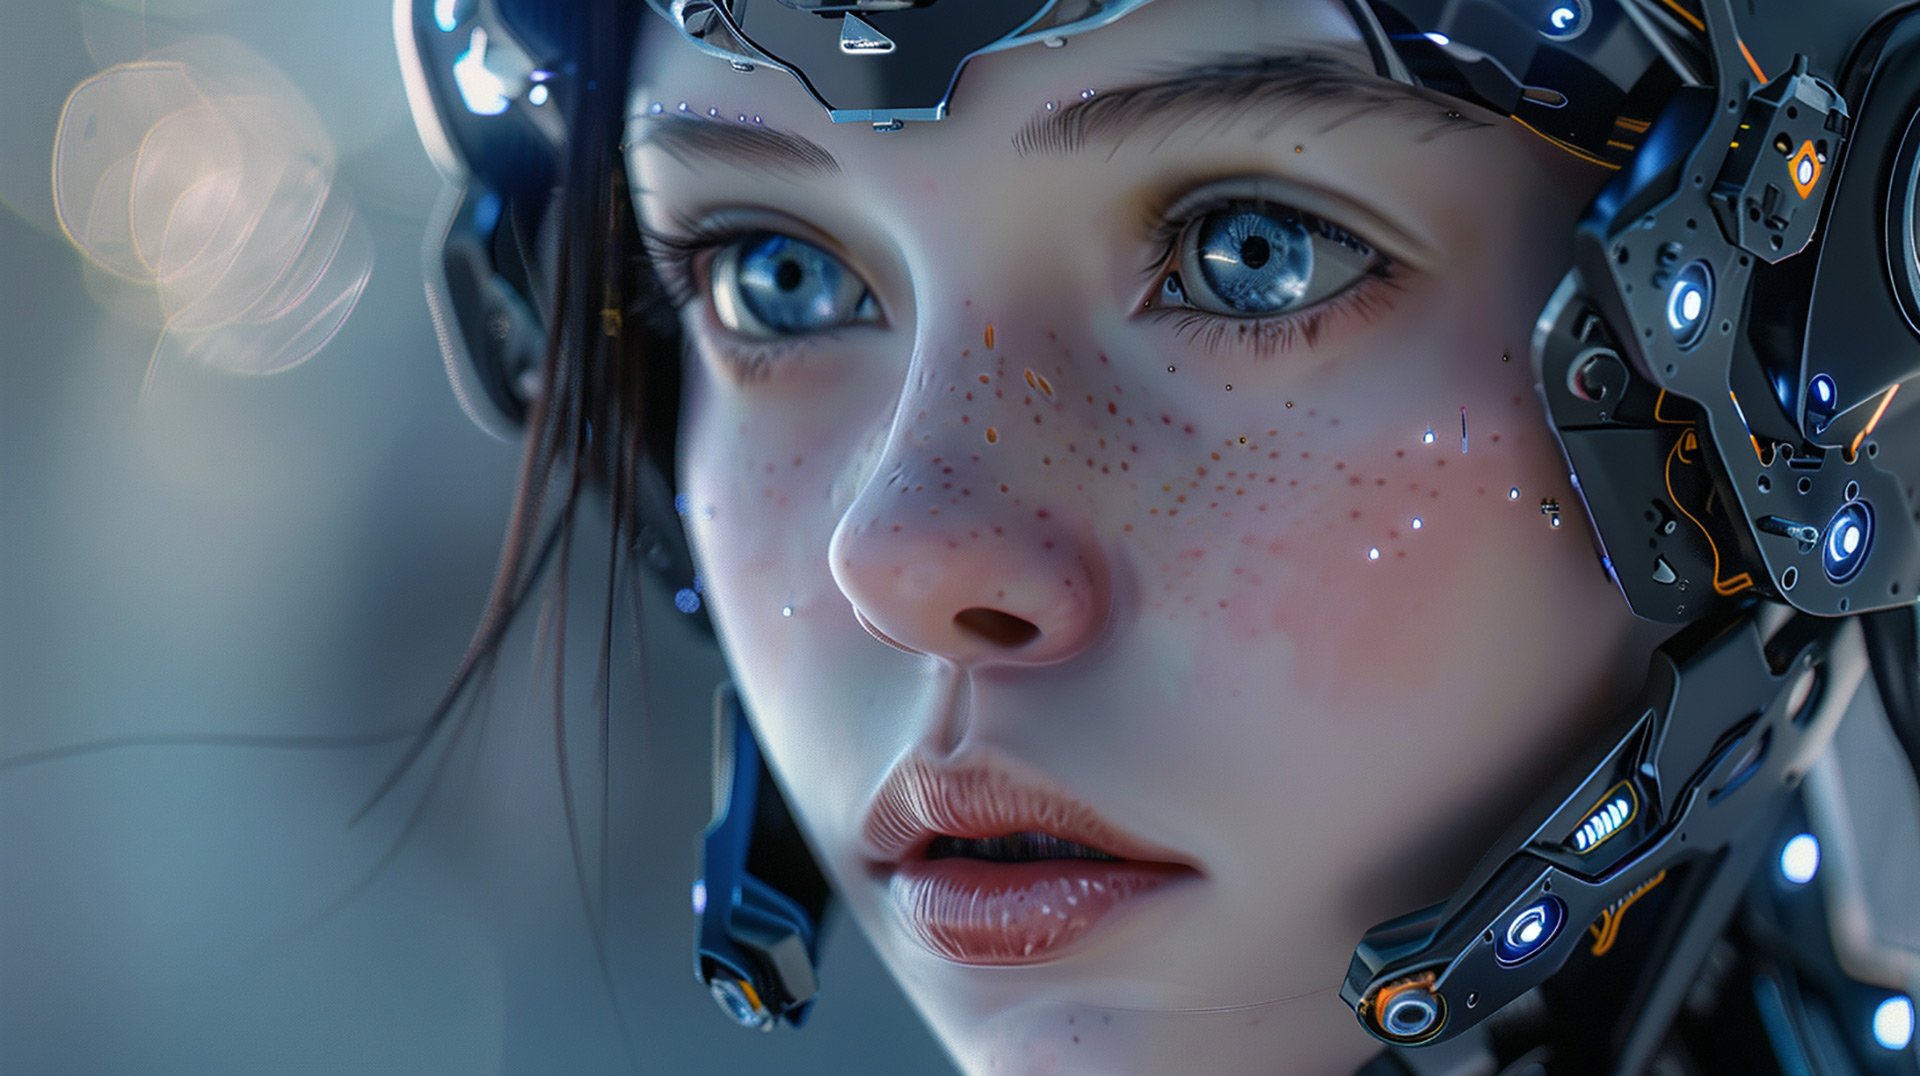 Hybrid Harmony: Blended Human-Robot Girl Images